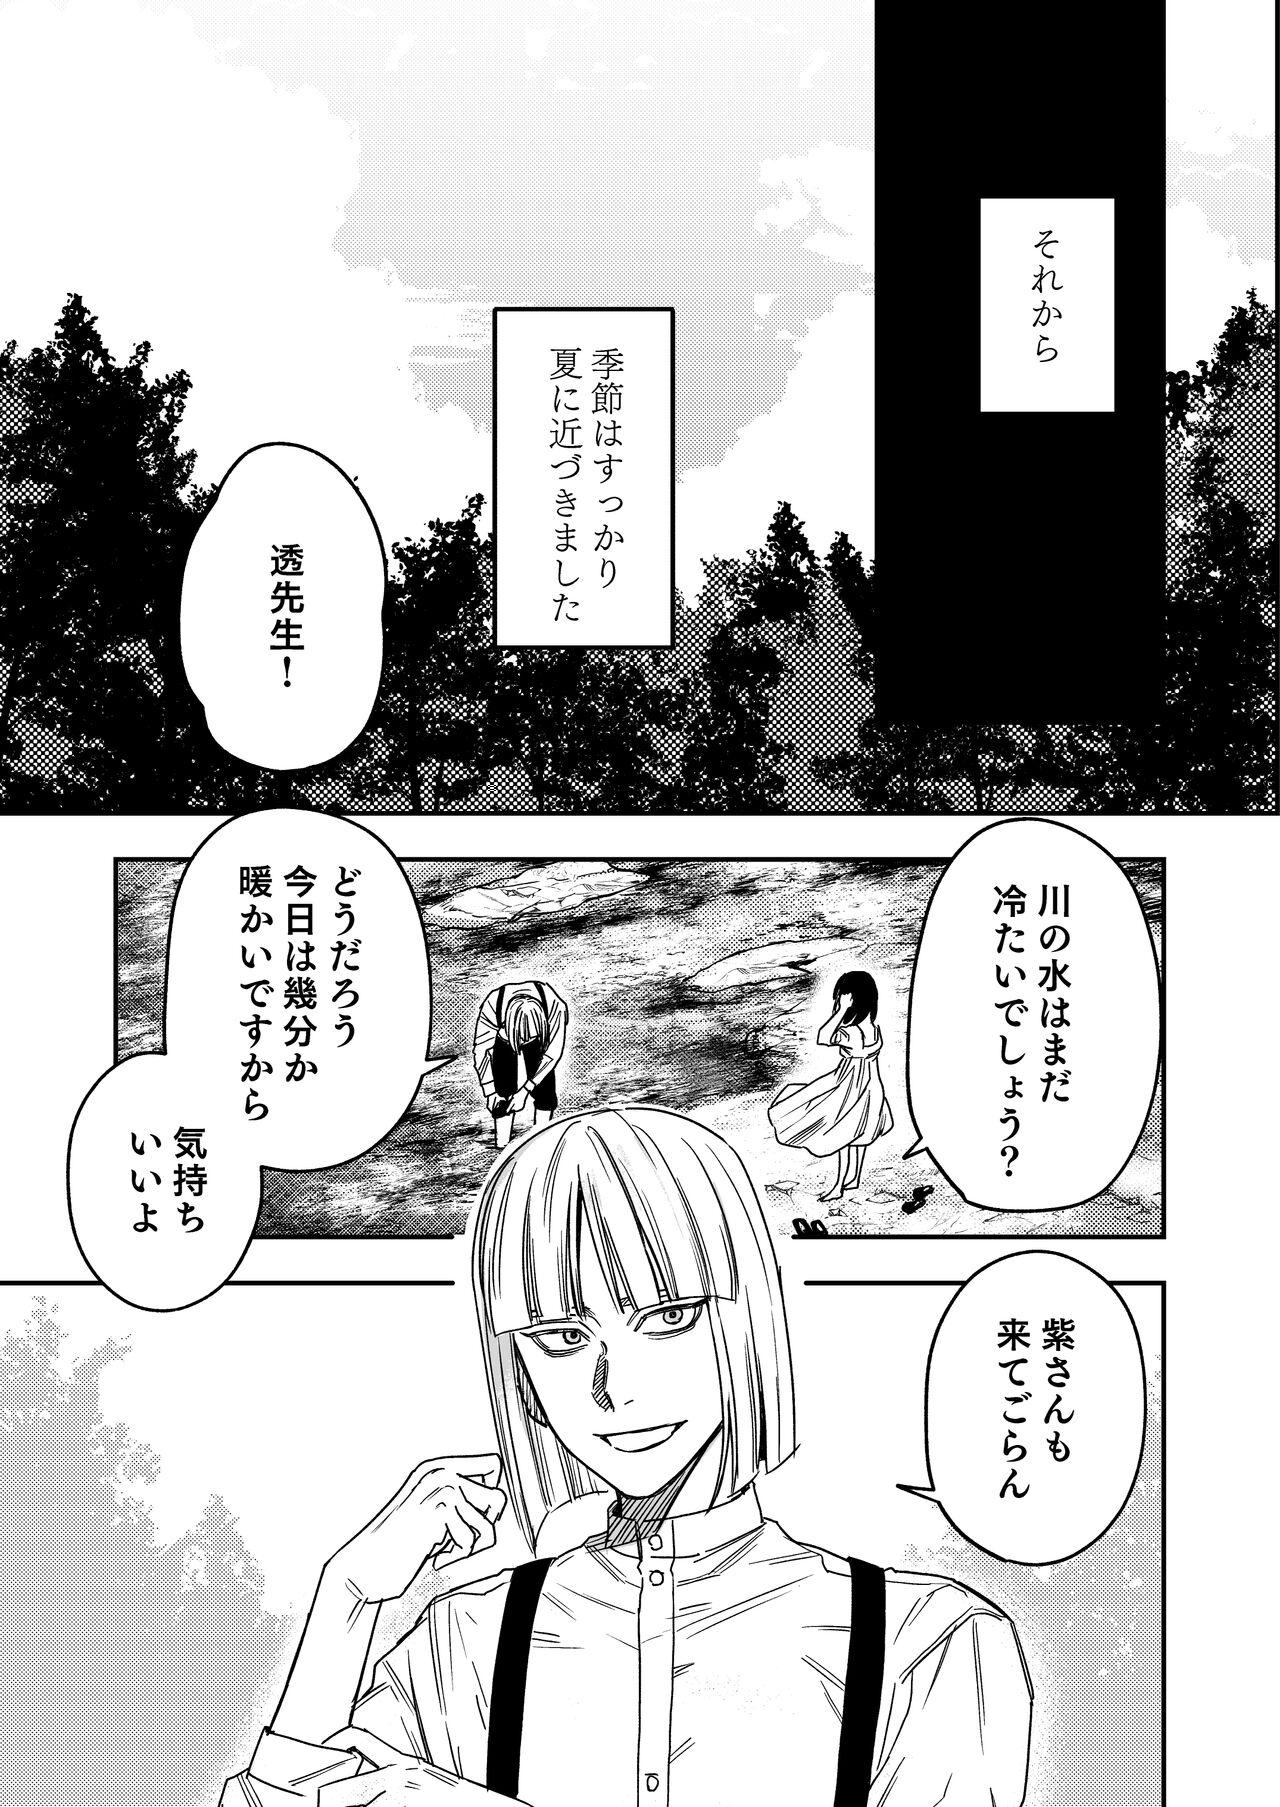 Home Hachiroku Sou - Ieori to Hana Katajikena no Yome - Original Sis - Page 6